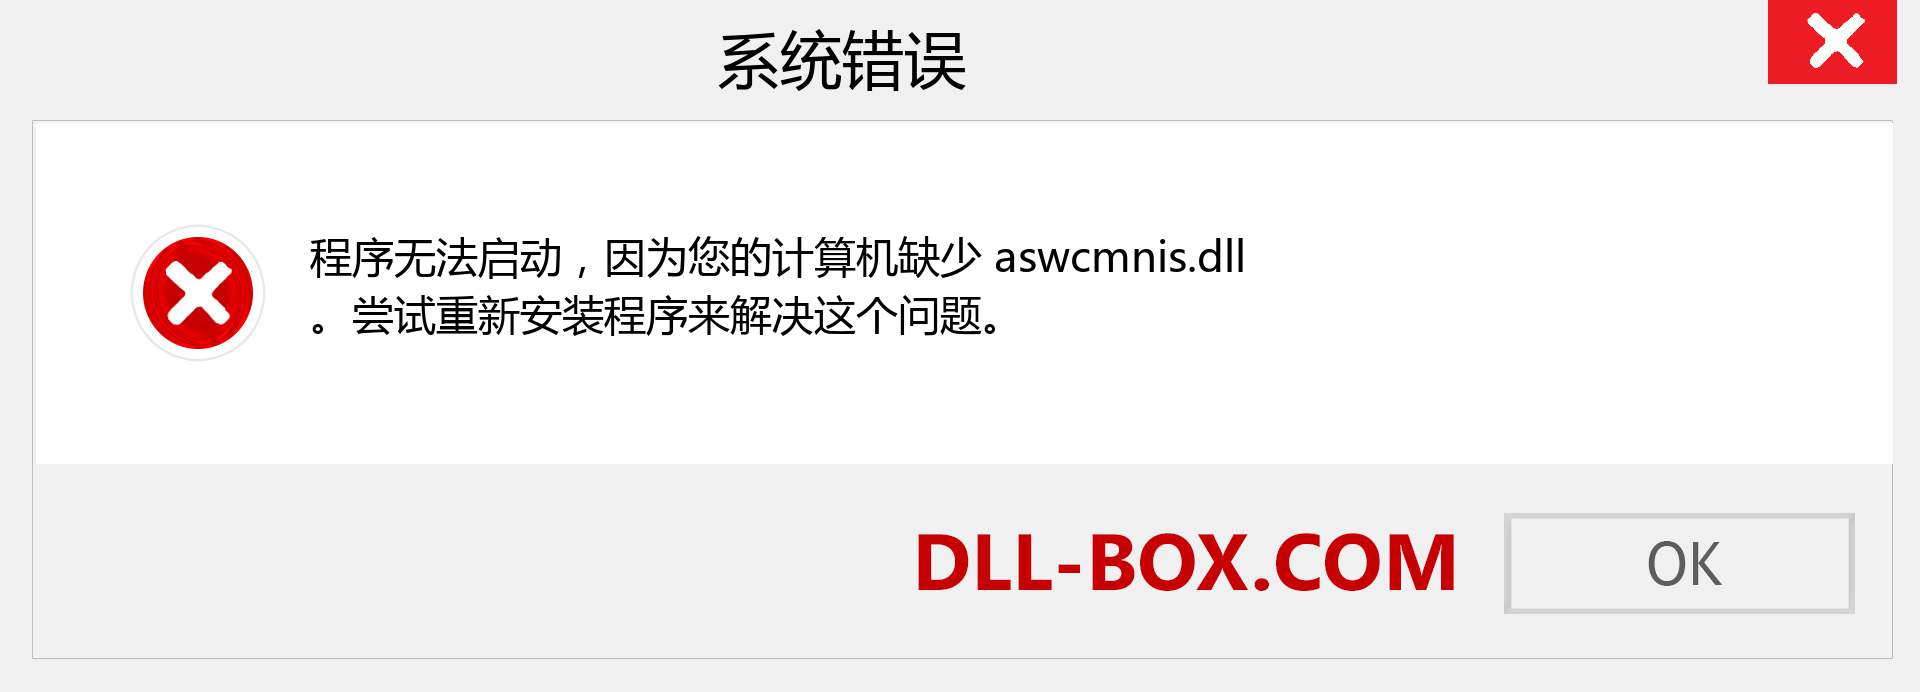 aswcmnis.dll 文件丢失？。 适用于 Windows 7、8、10 的下载 - 修复 Windows、照片、图像上的 aswcmnis dll 丢失错误